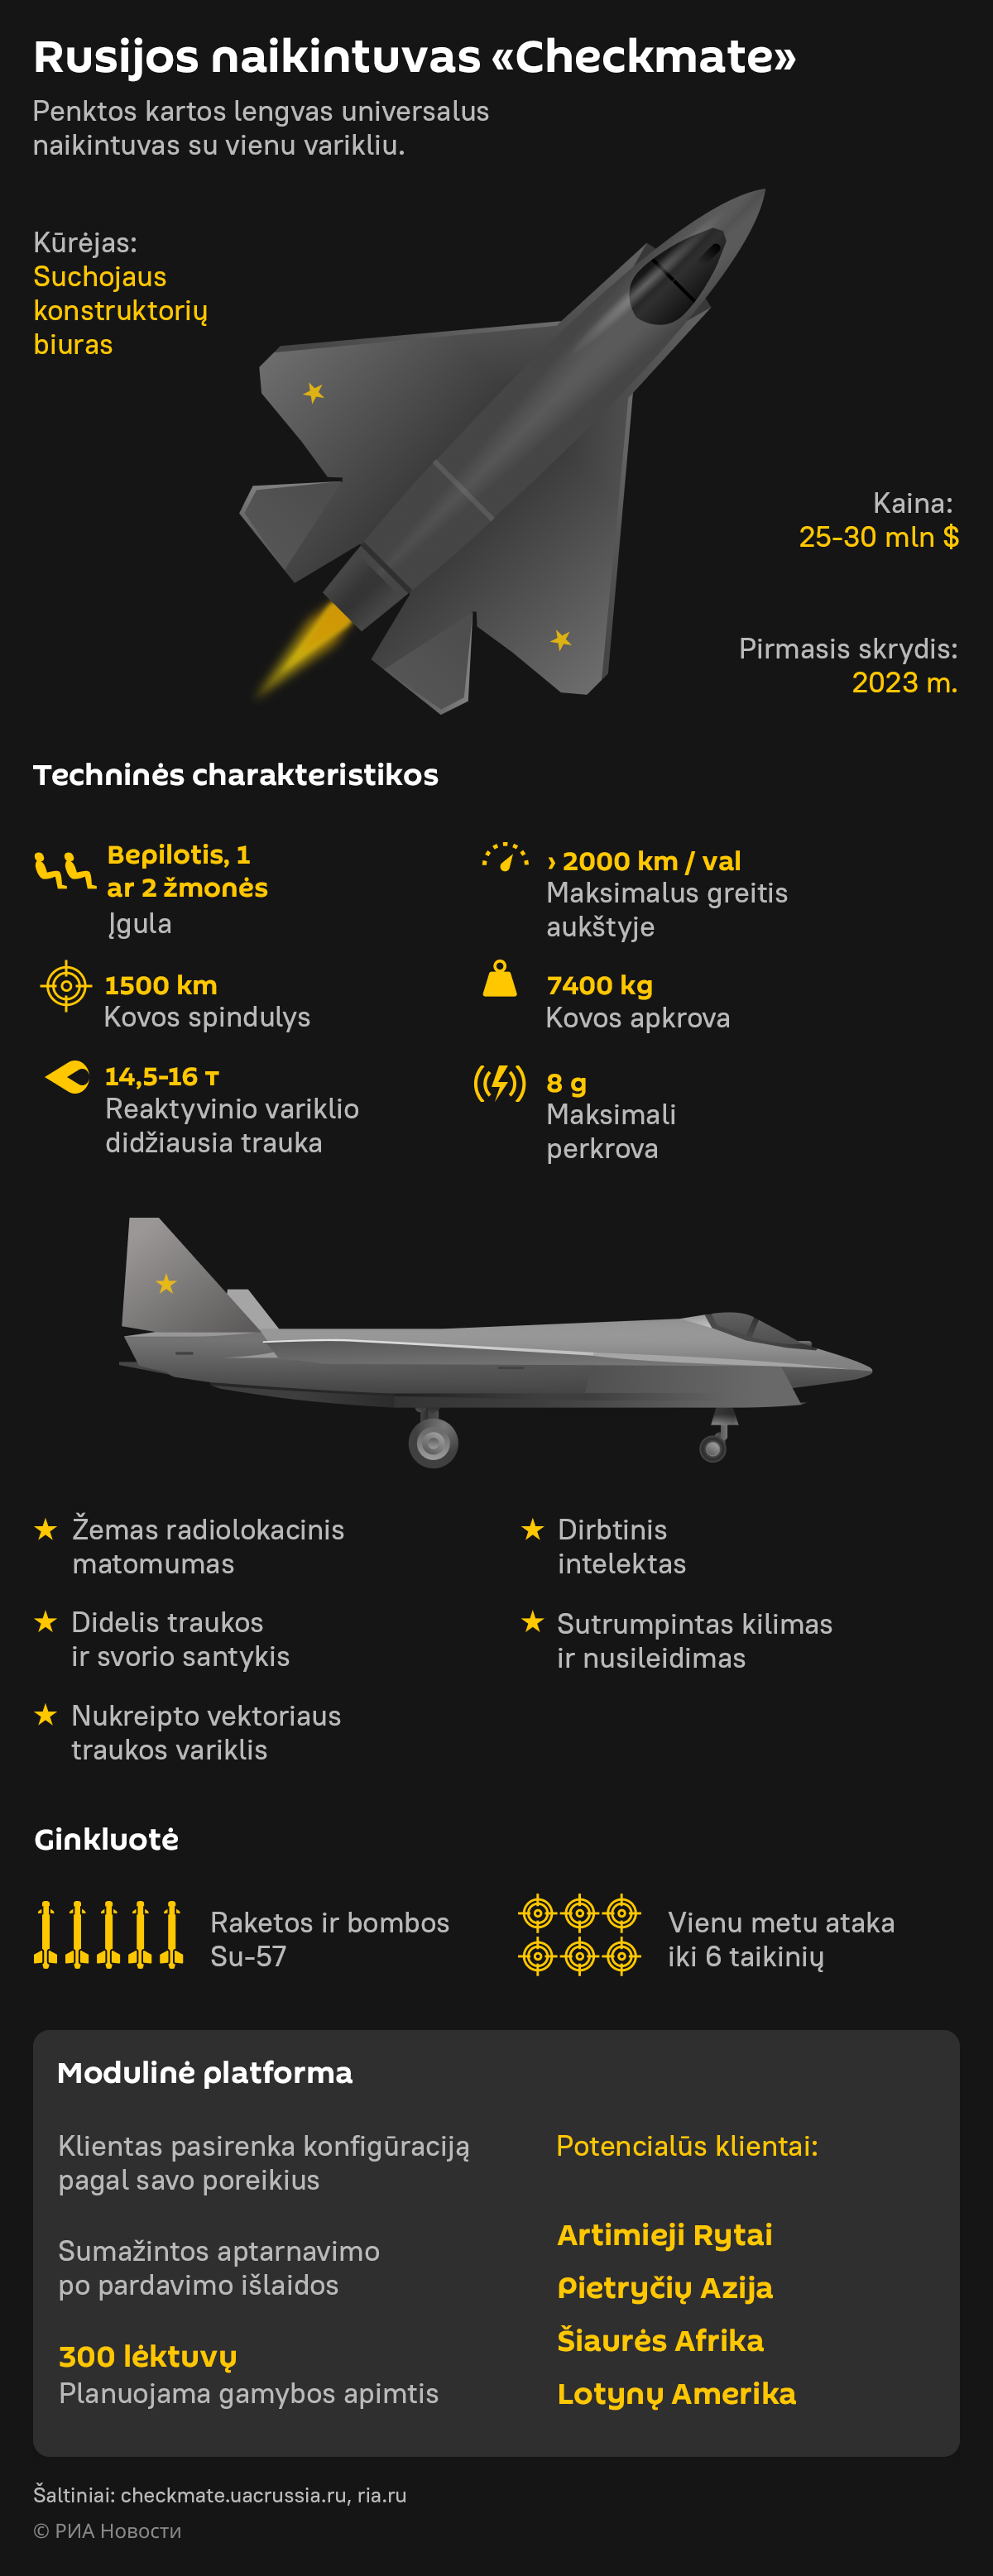 Rusijos naikintuvas Checkmate - Sputnik Lietuva